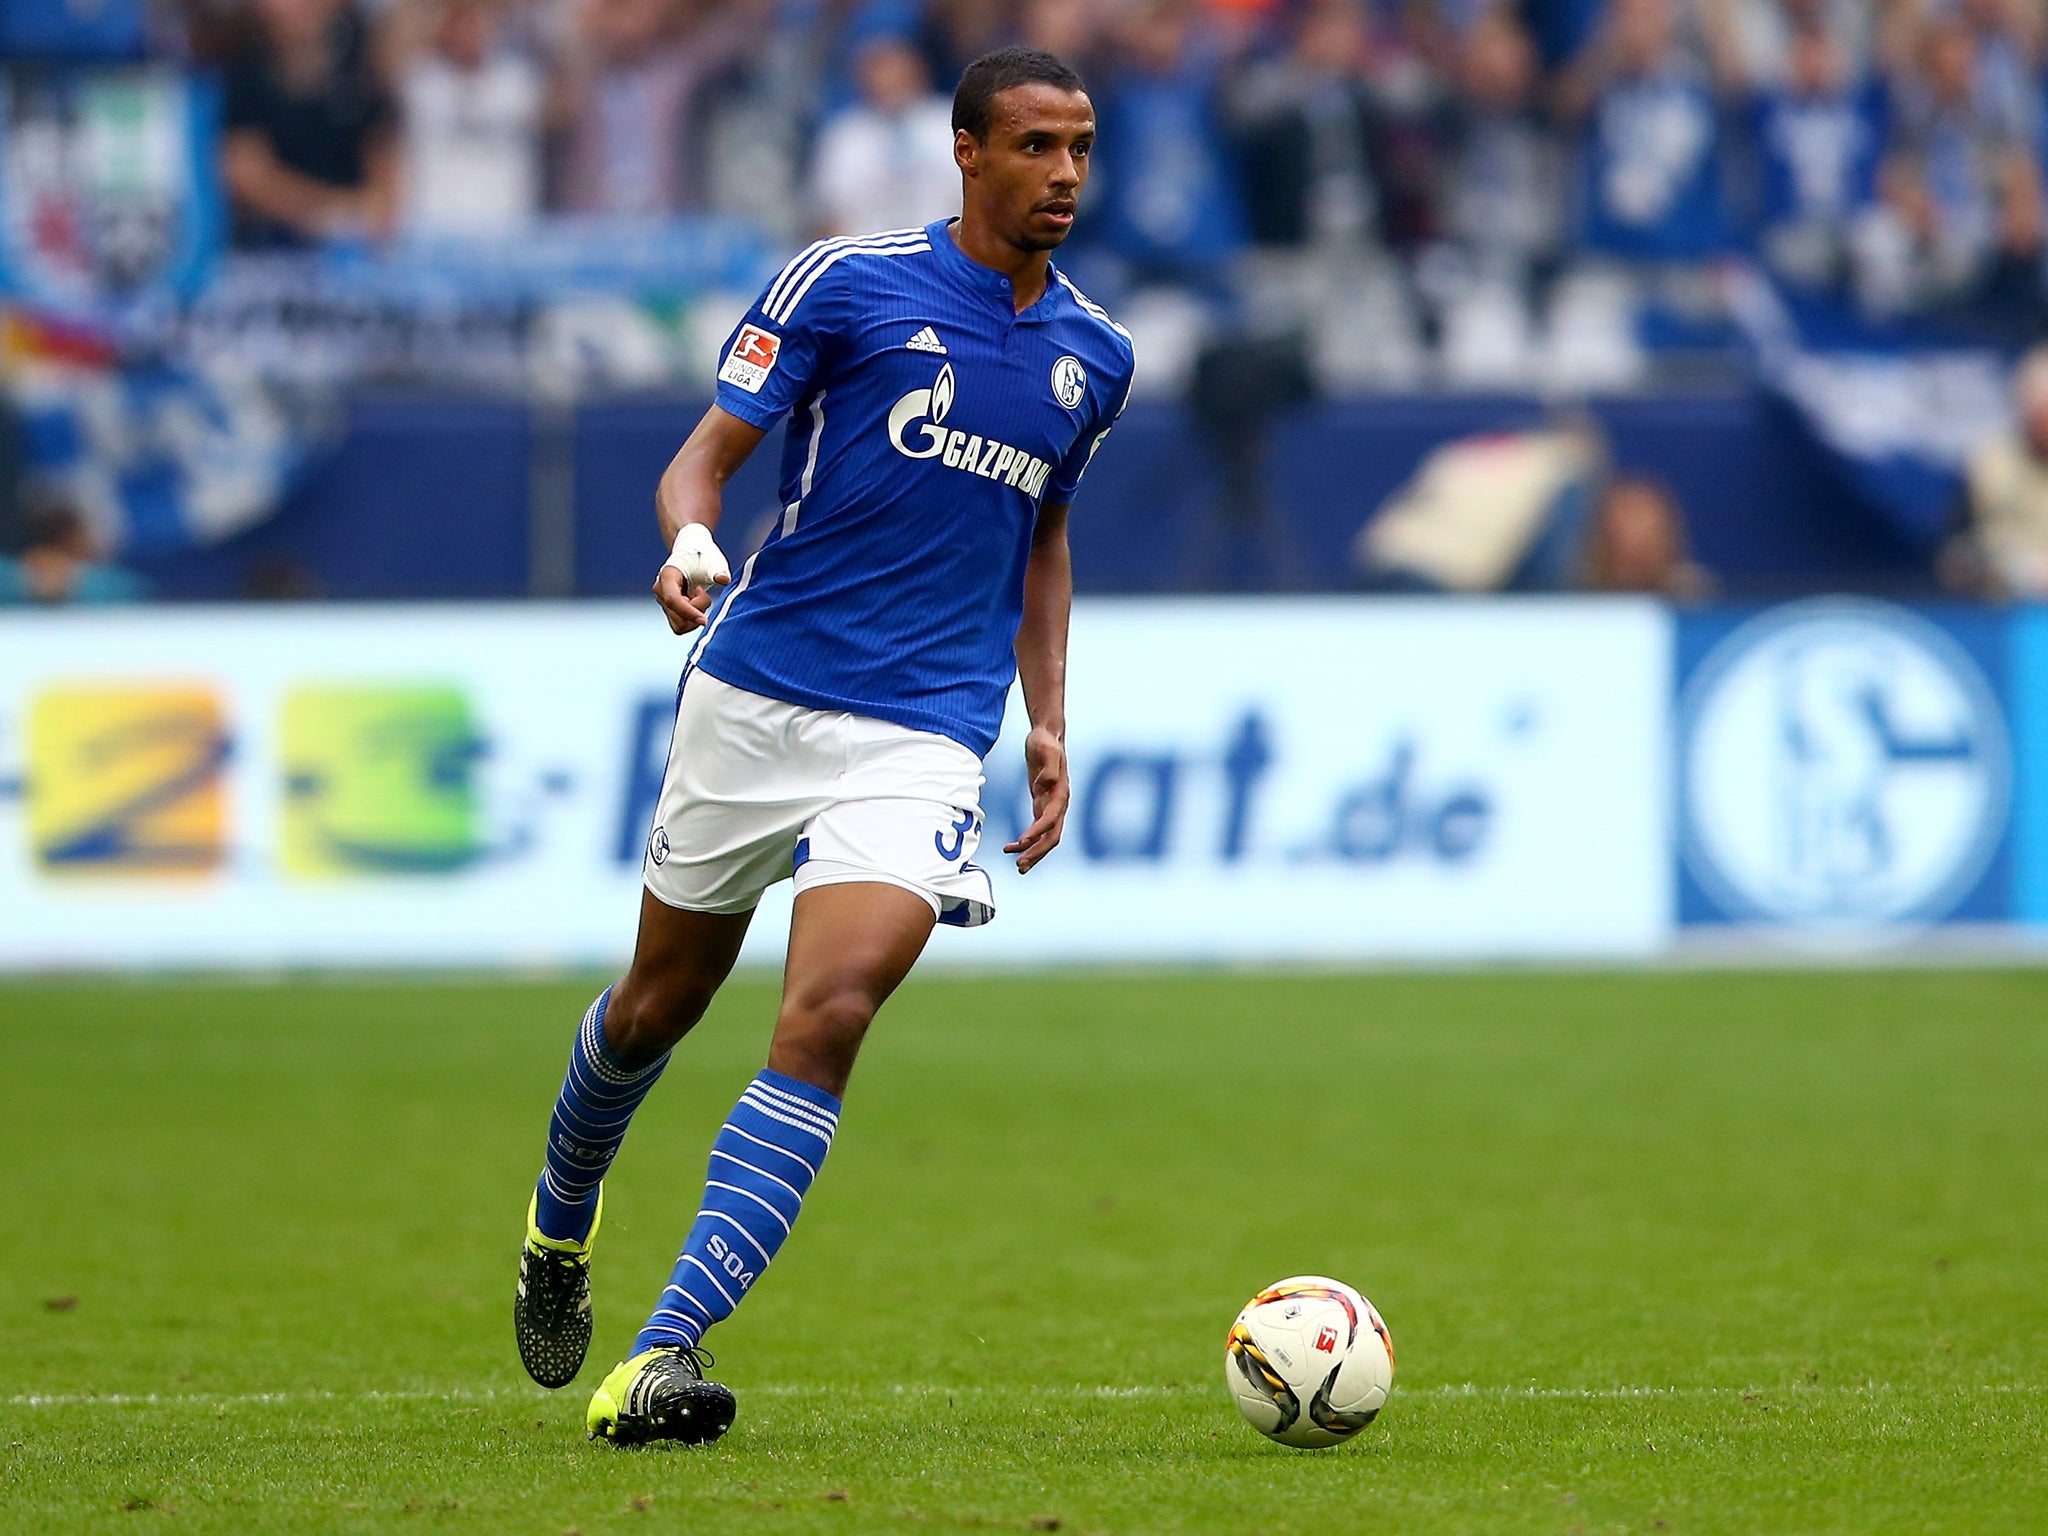 Schalke defender Joel Matip